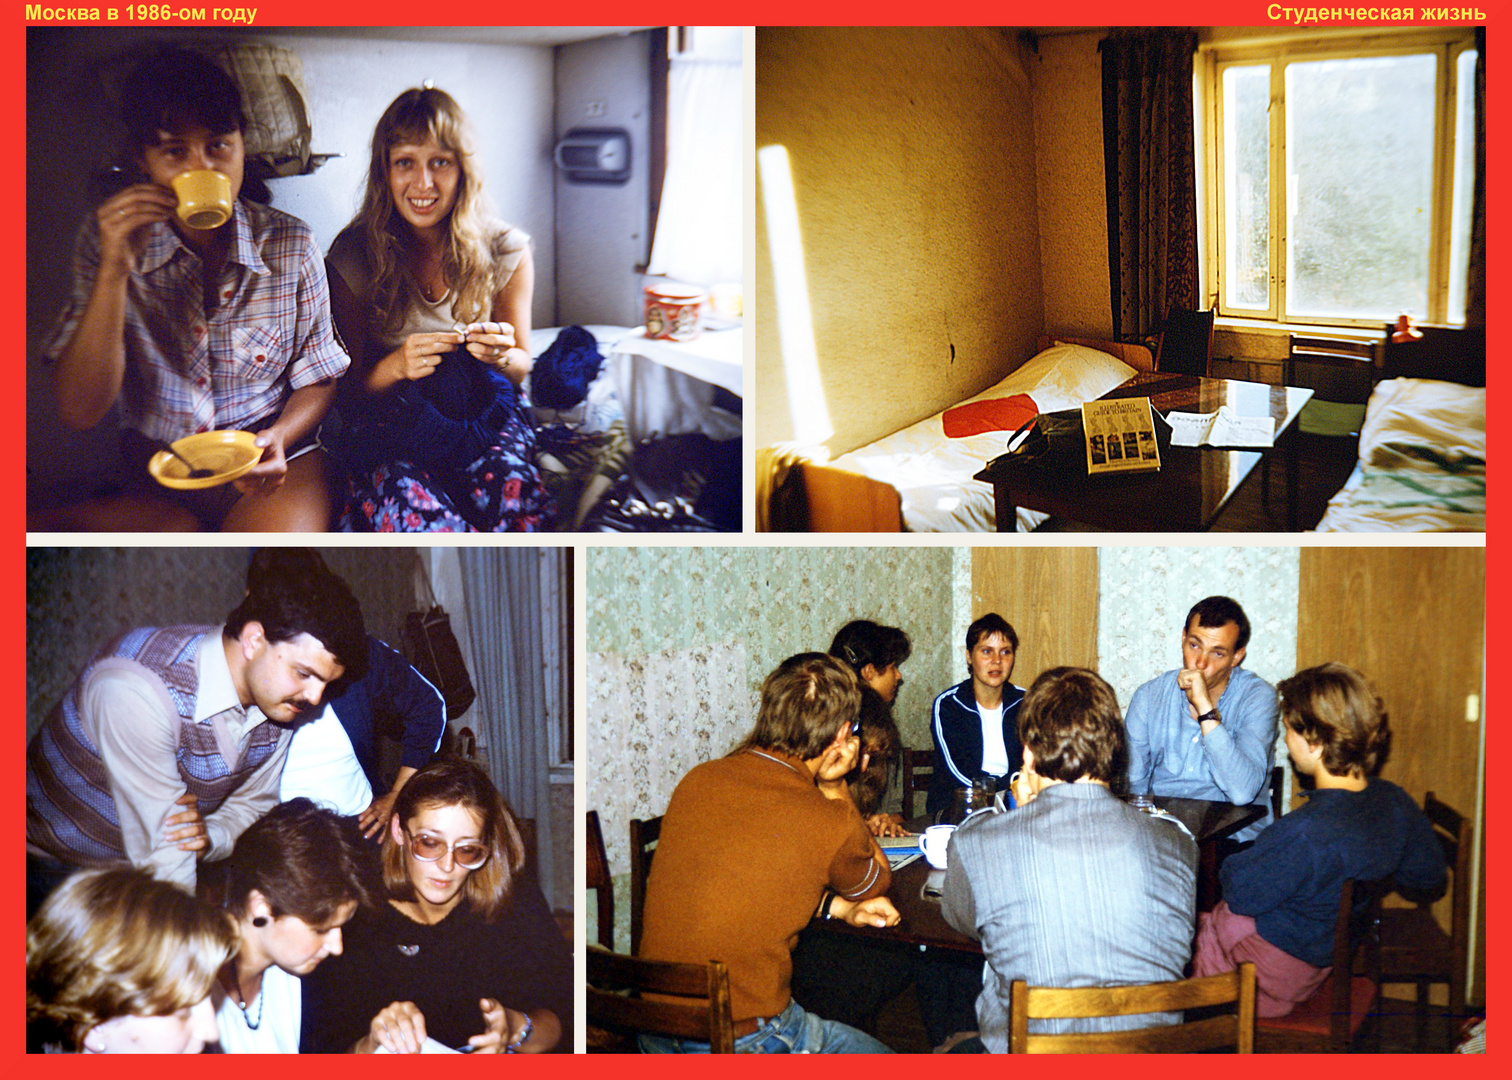 Moskau 1986: Studentenleben